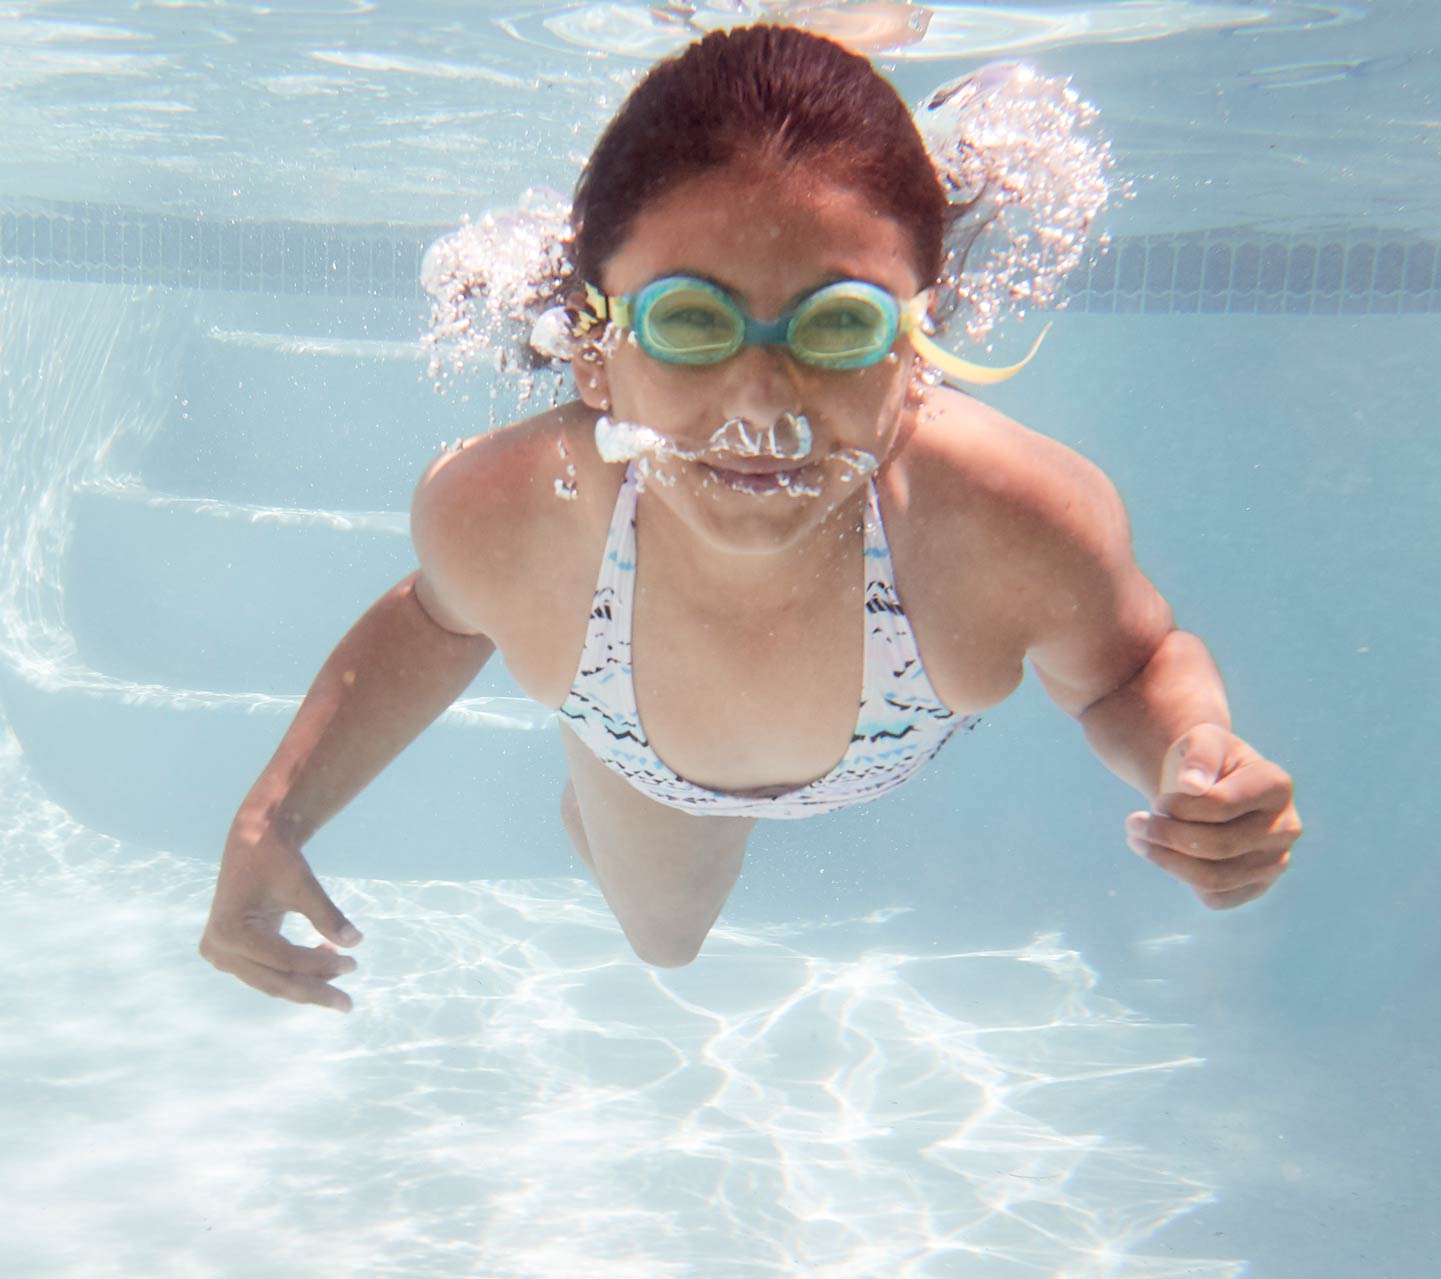 Bambino che nuota sott’acqua con un impianto Cochlear